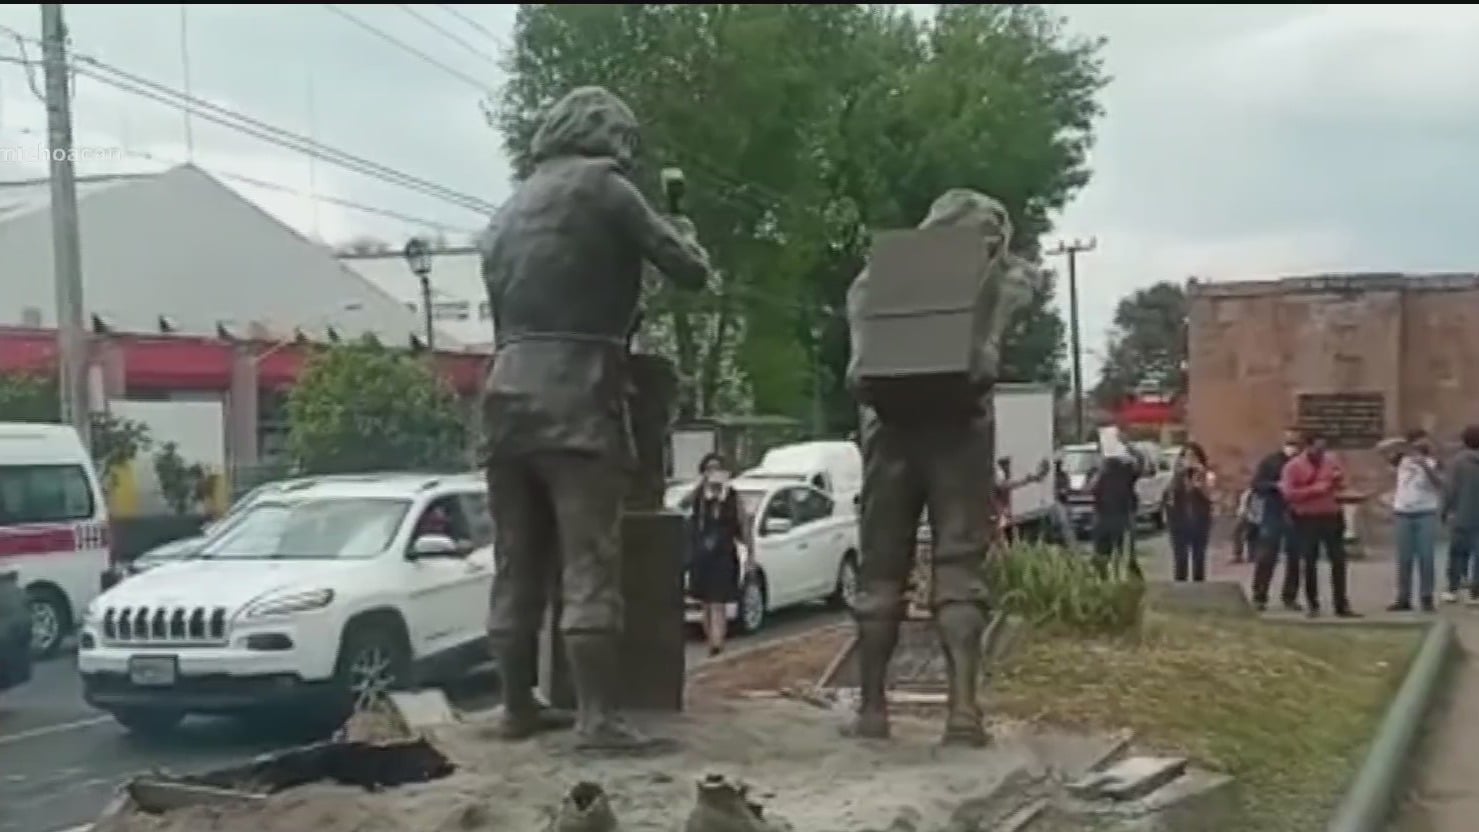 detenidos por destruir estatua en morelia llegan a acuerdo reparatorio con las autoridades